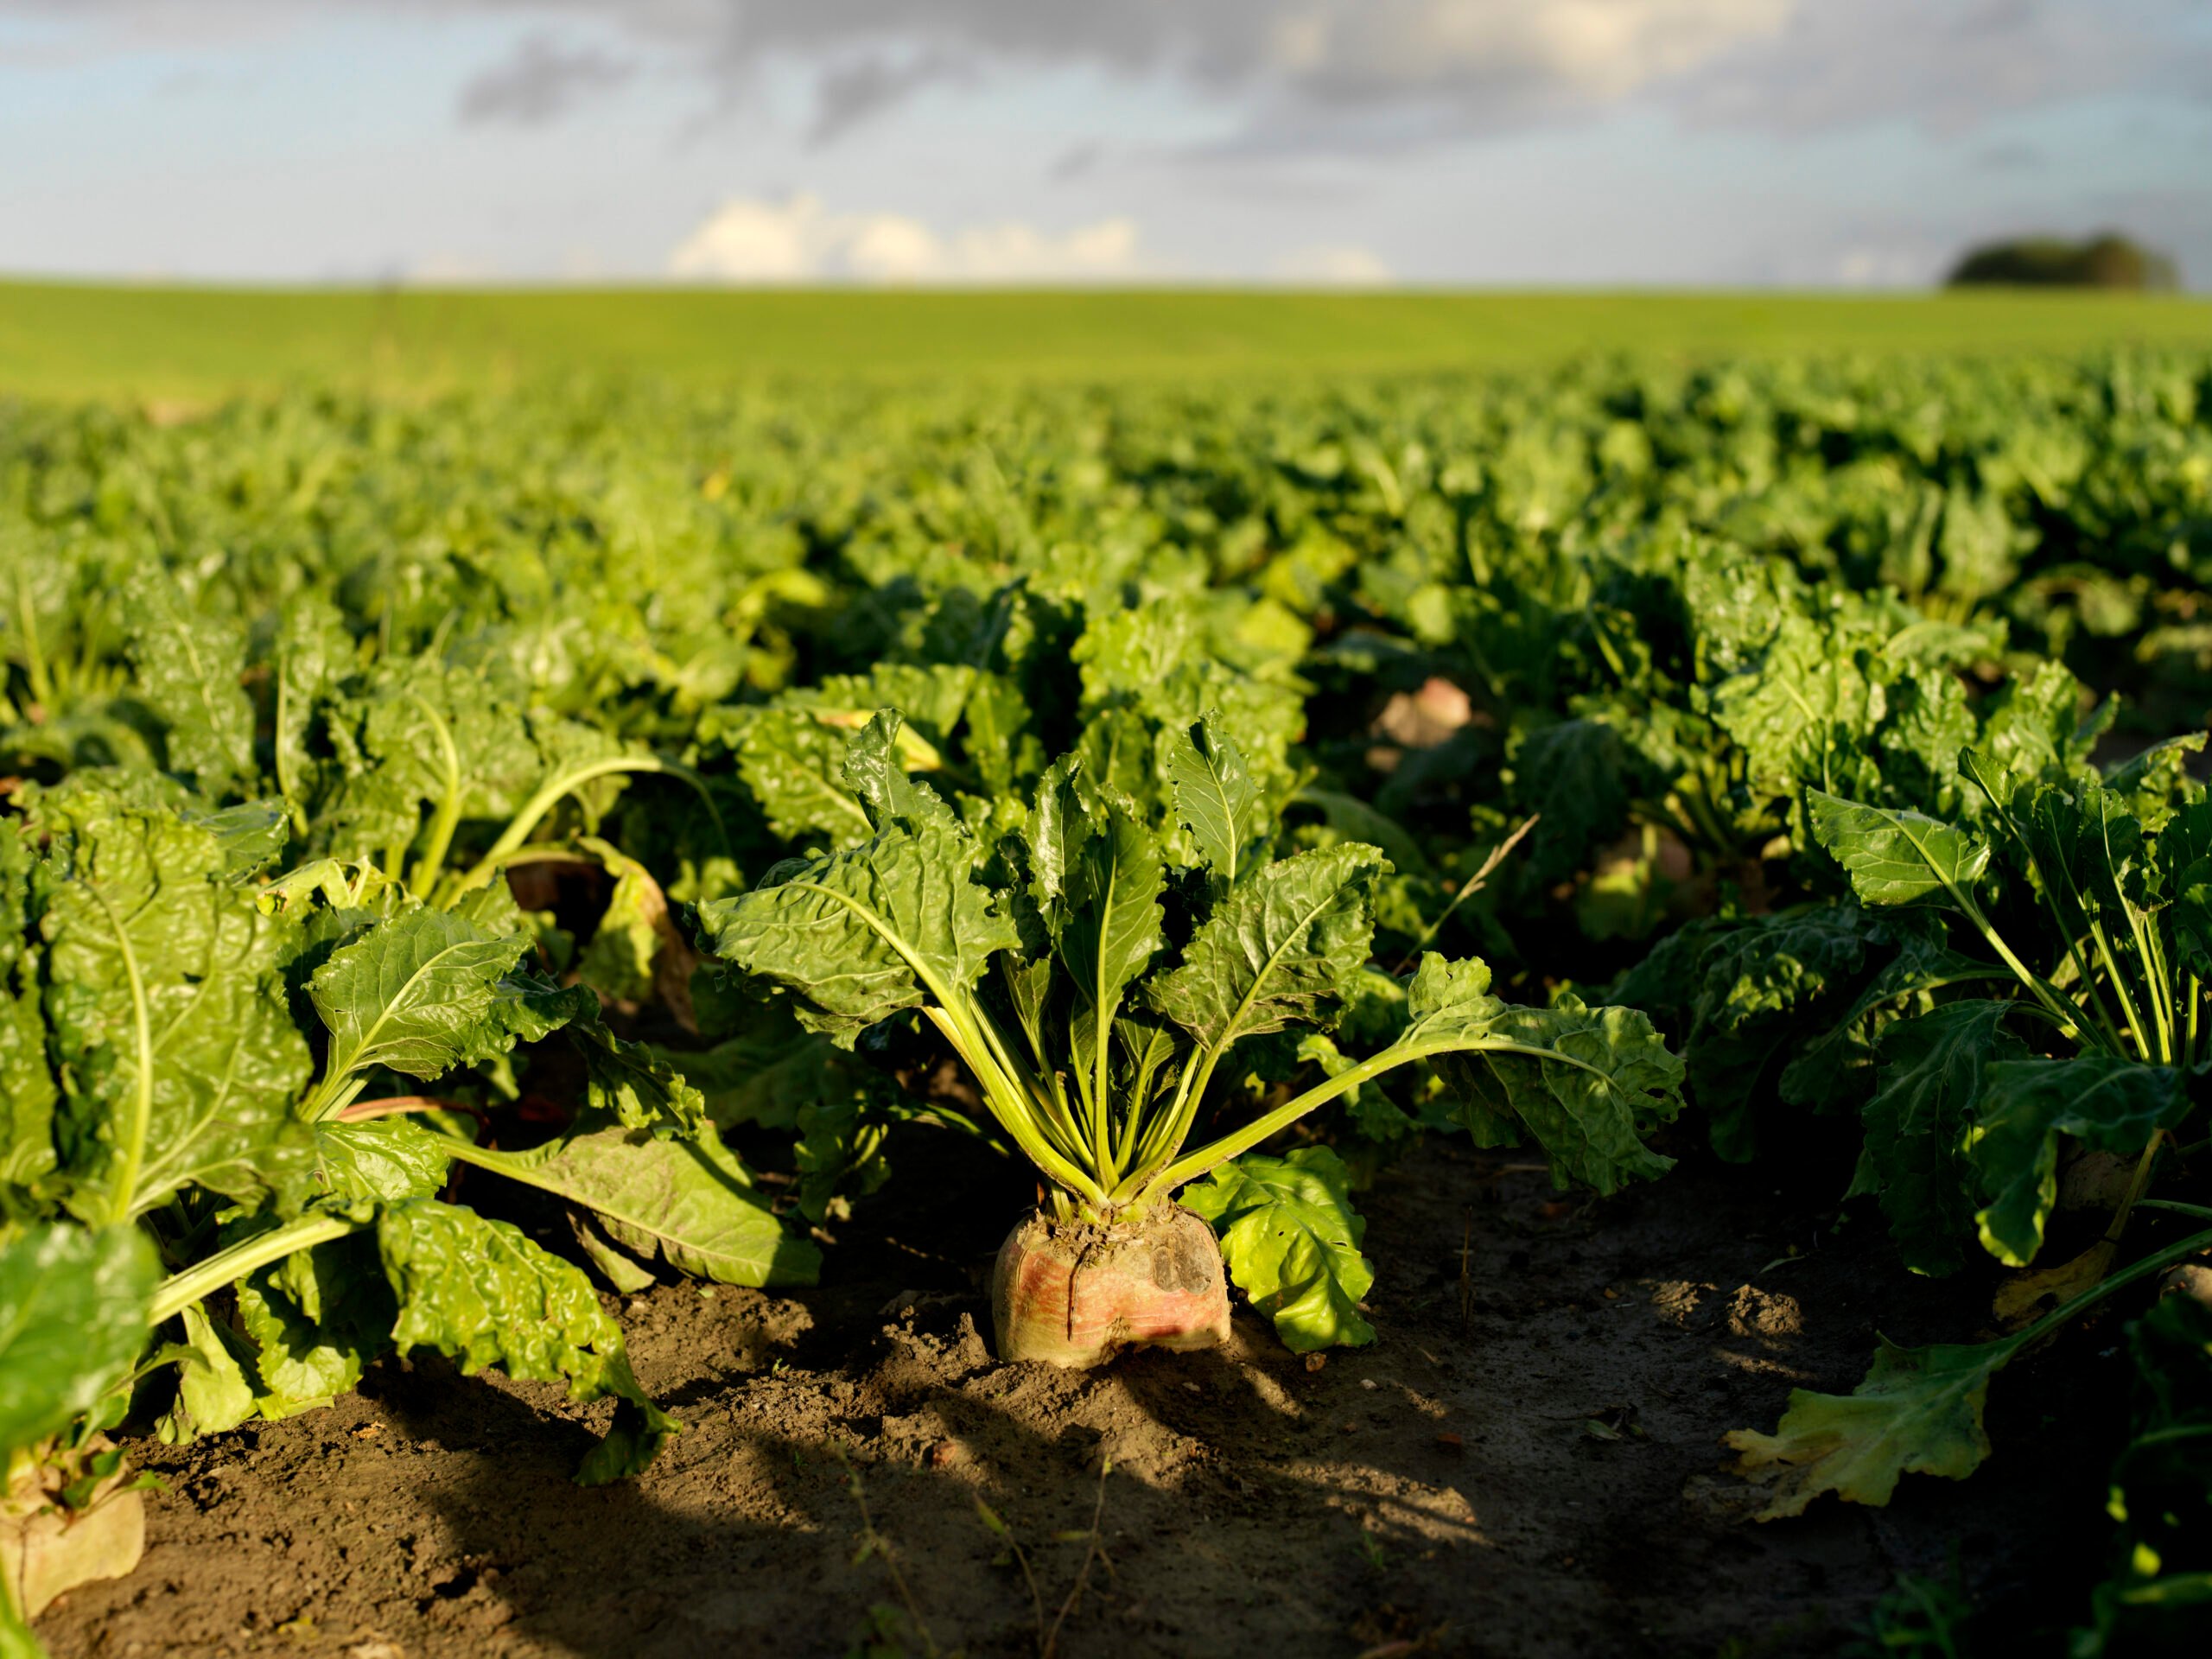 Sugar beets as a new, circular raw material